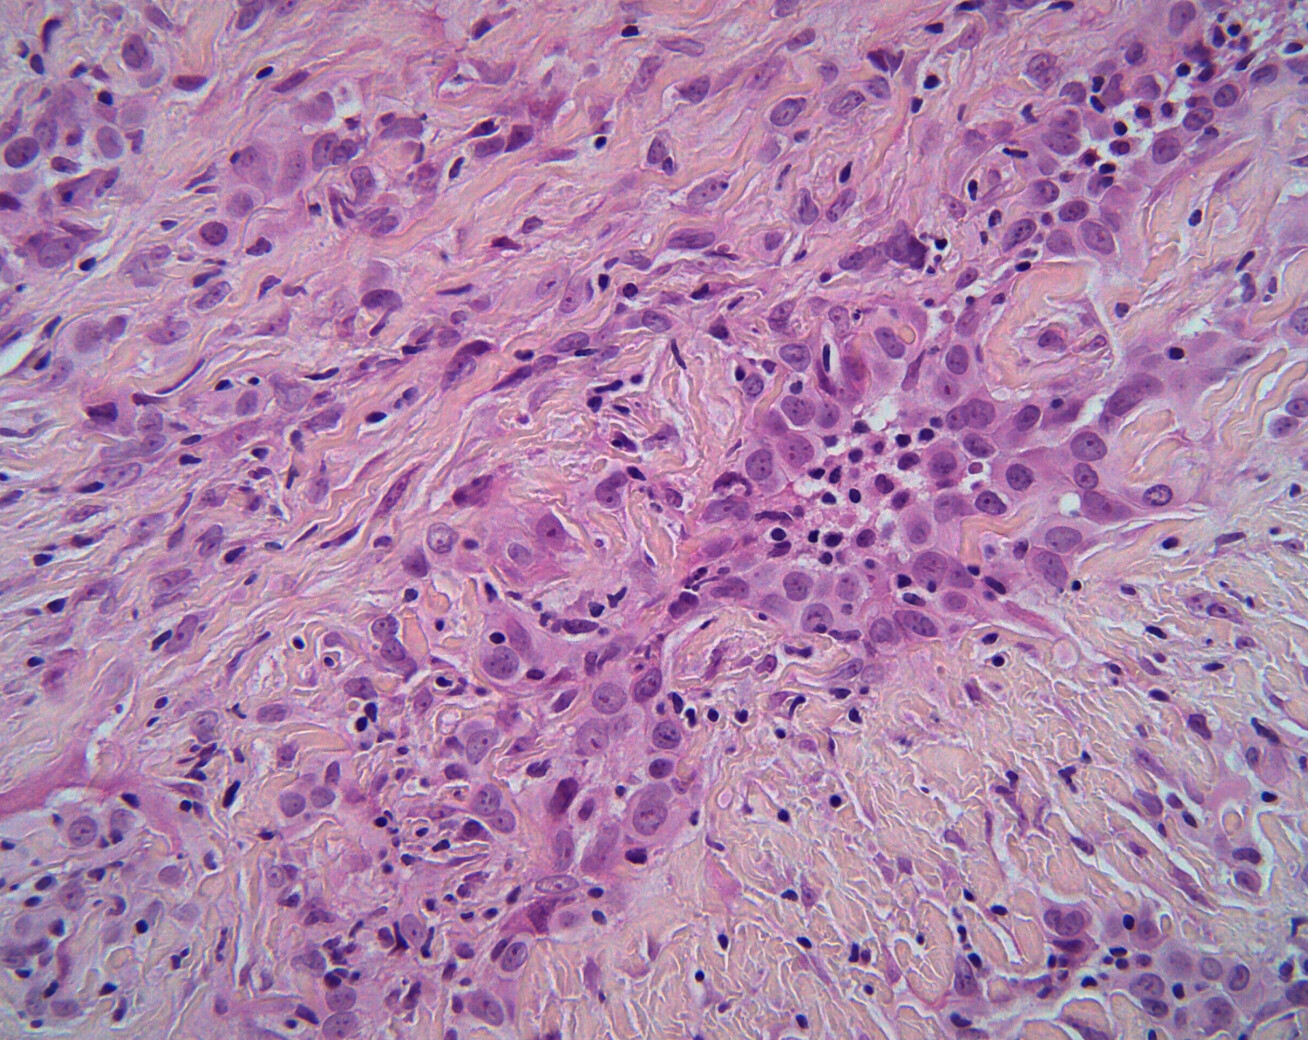 Mesothelioma cancer cells